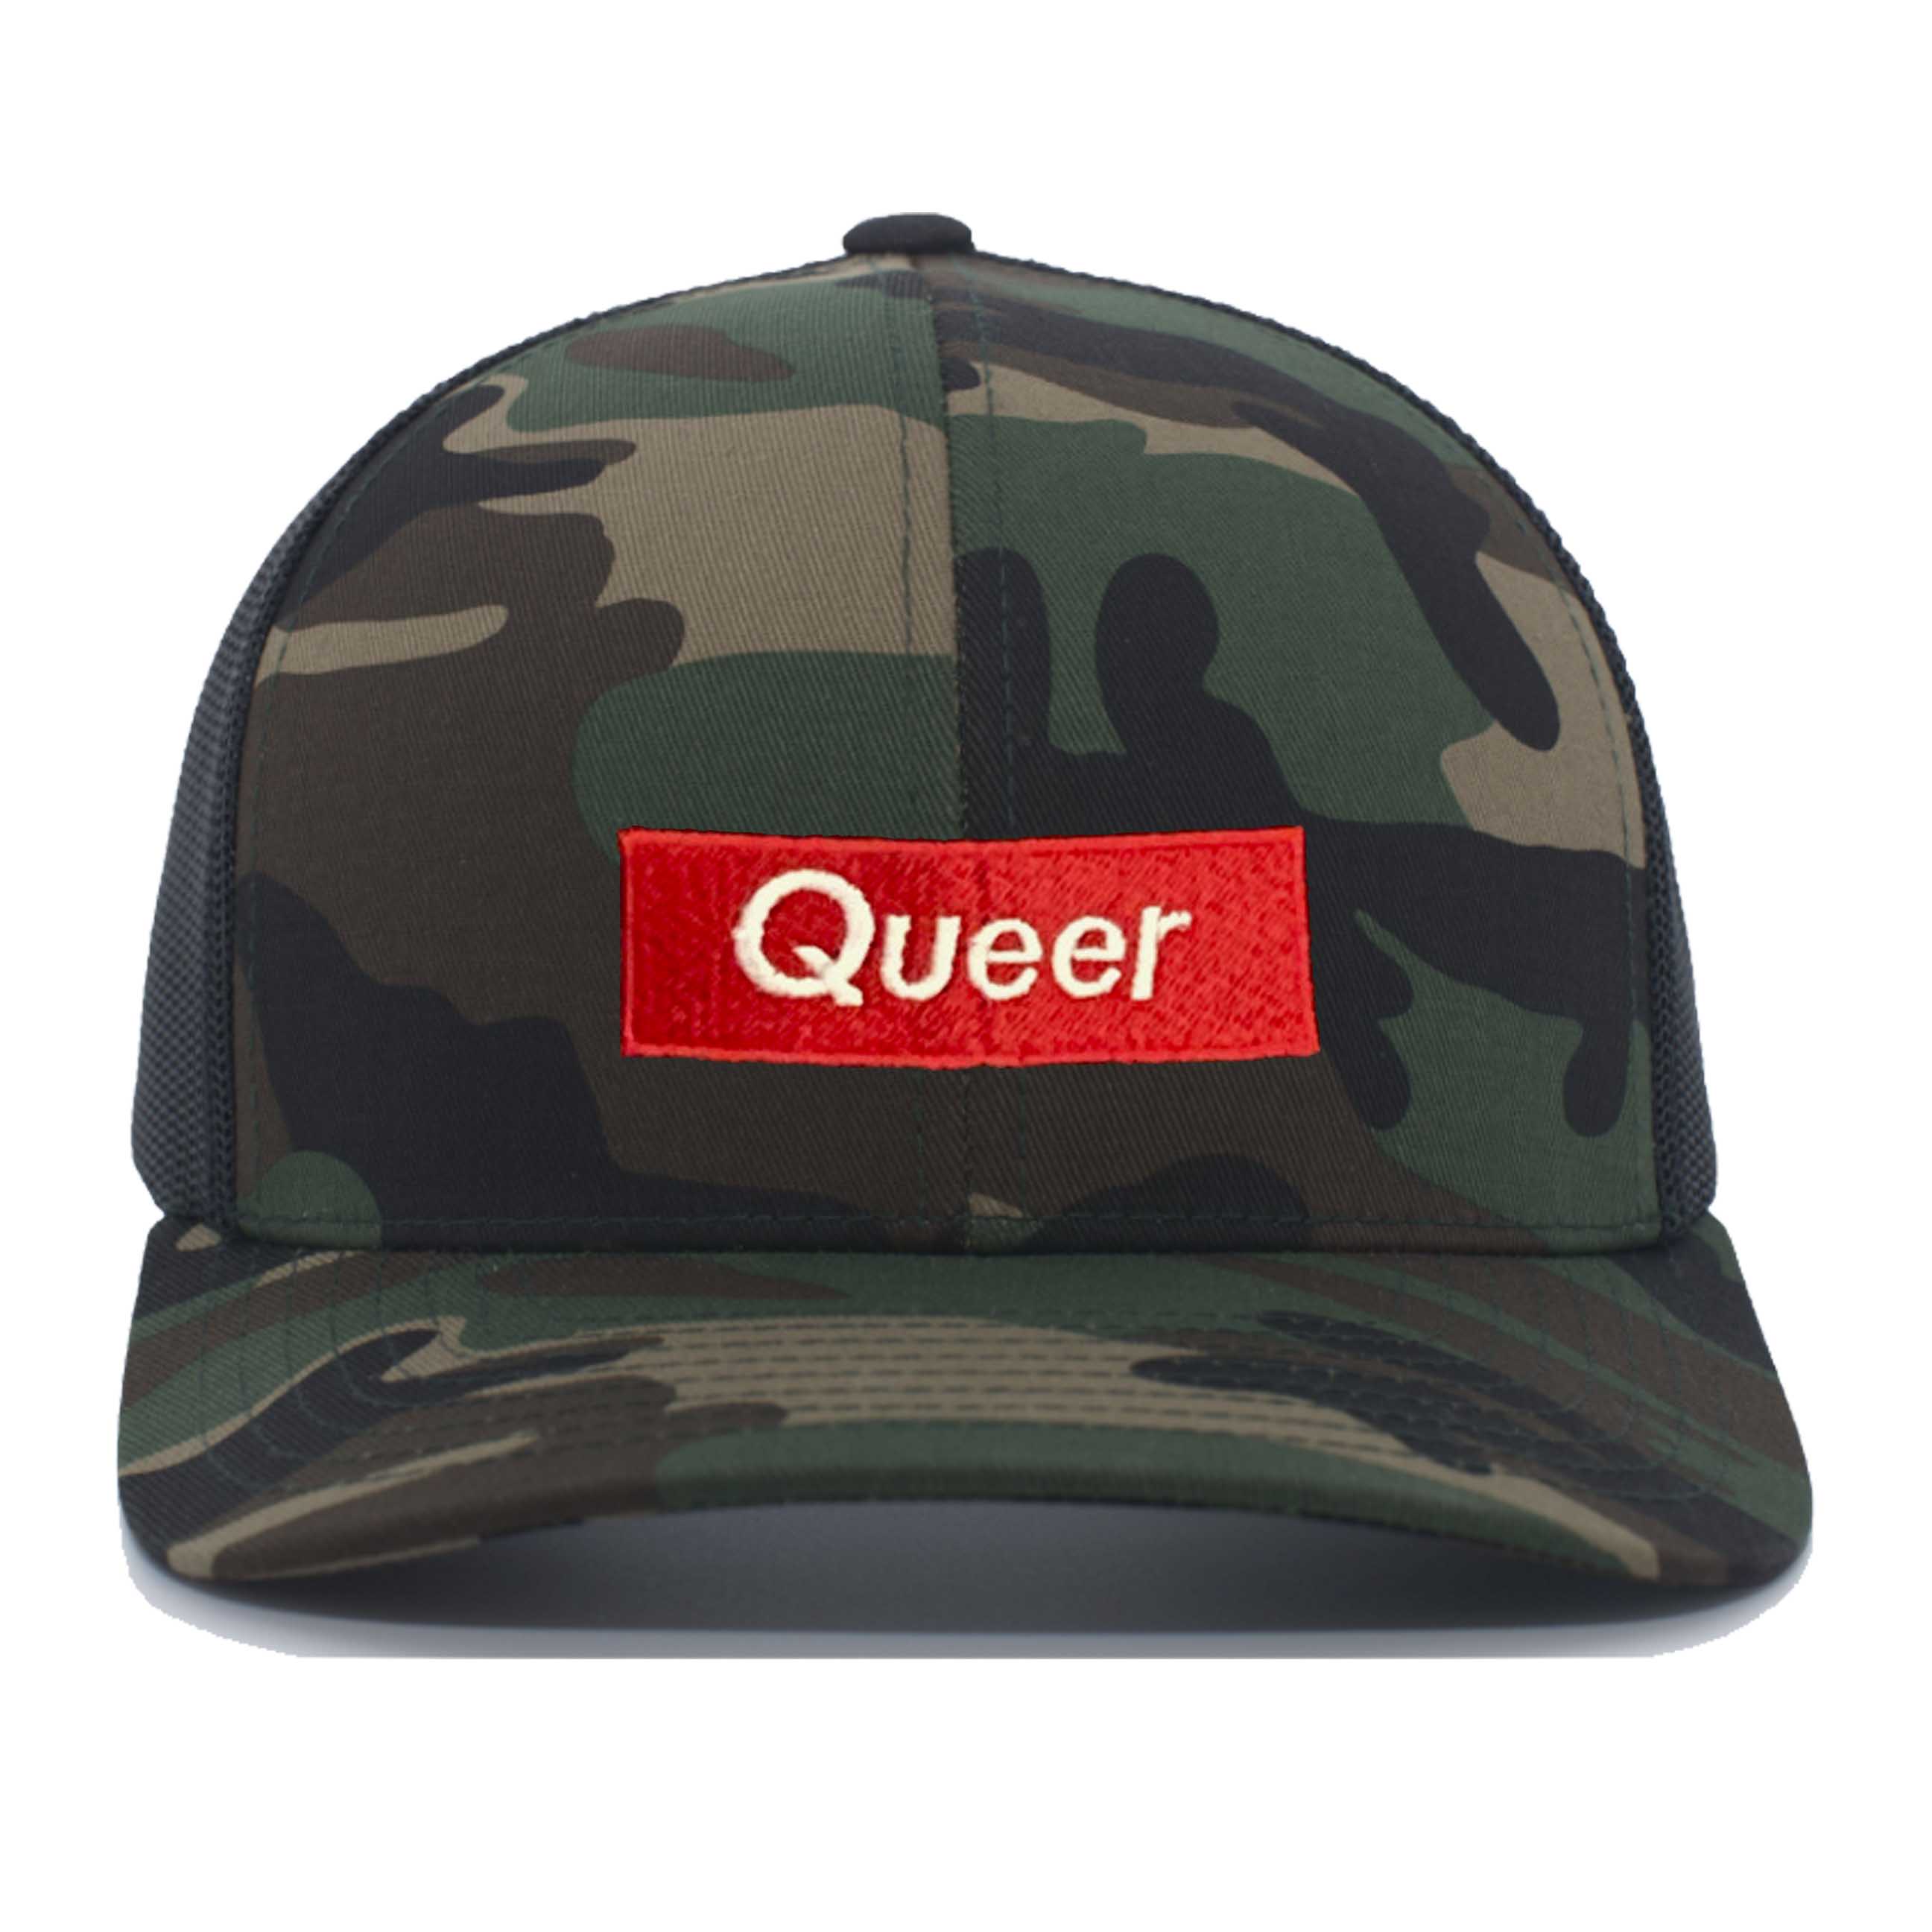 Queer Camo Trucker Mesh Snapback Hat black